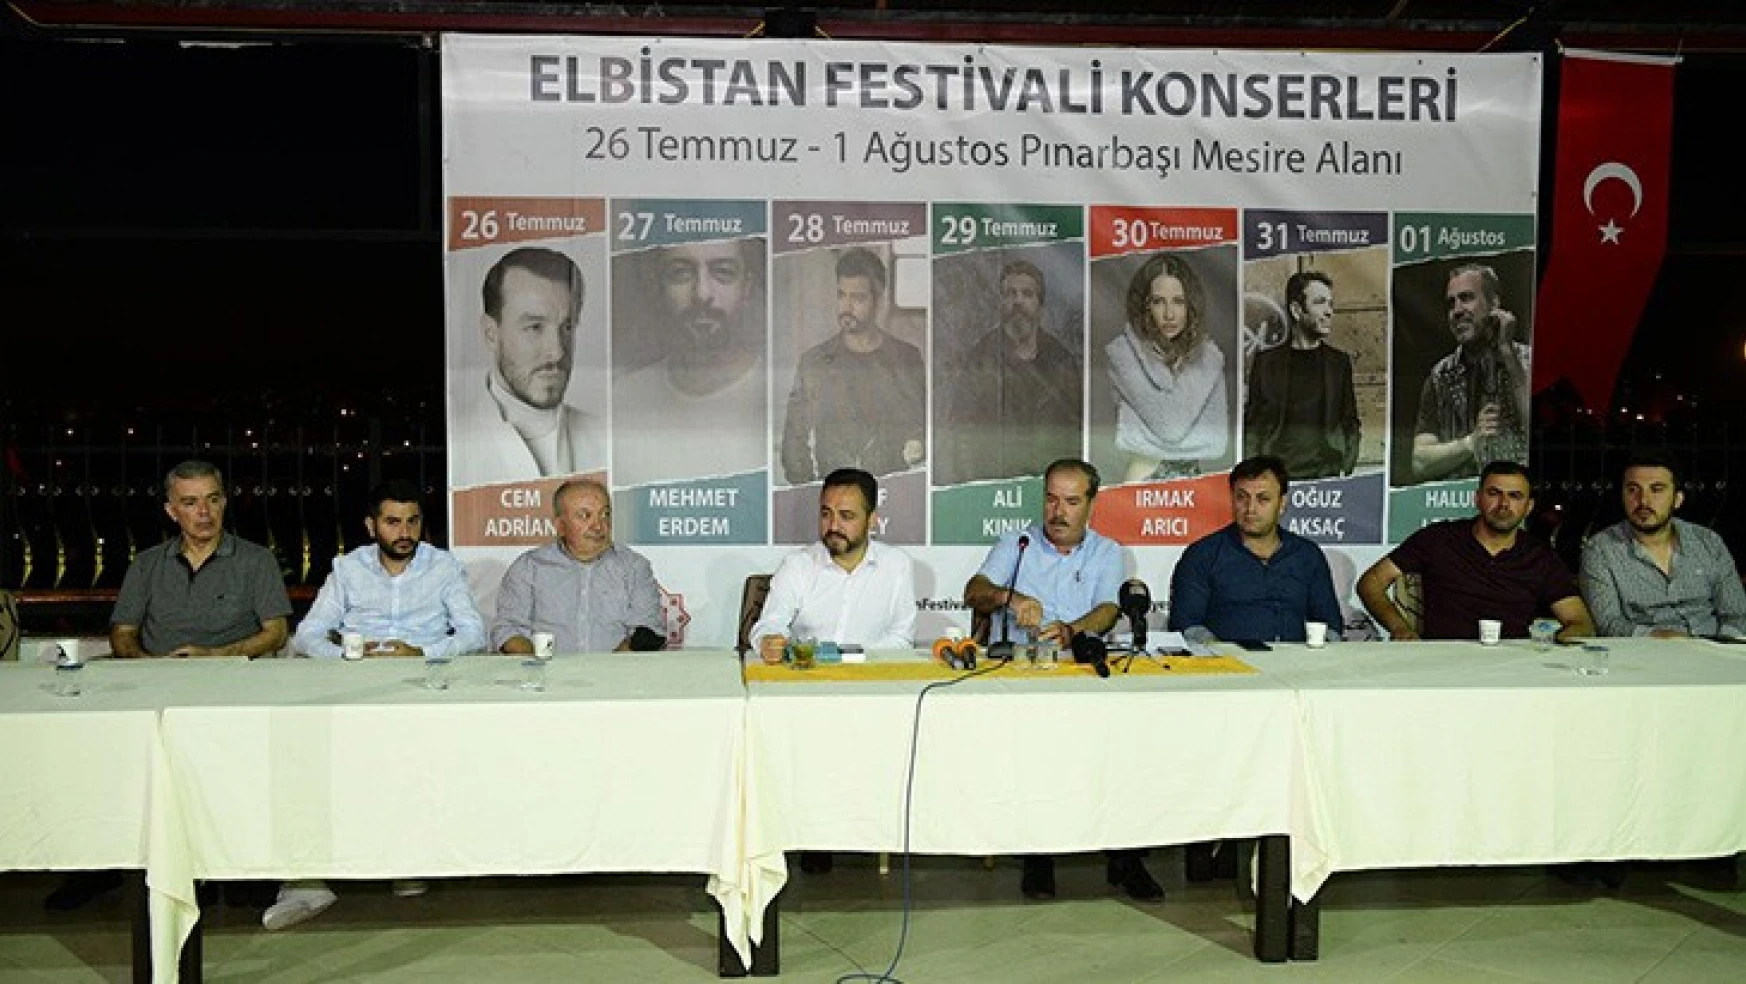 Elbistan Belediye Başkanı Gürbüz: Festivale, yaklaşık 350 bin kişinin katılmasını bekliyoruz